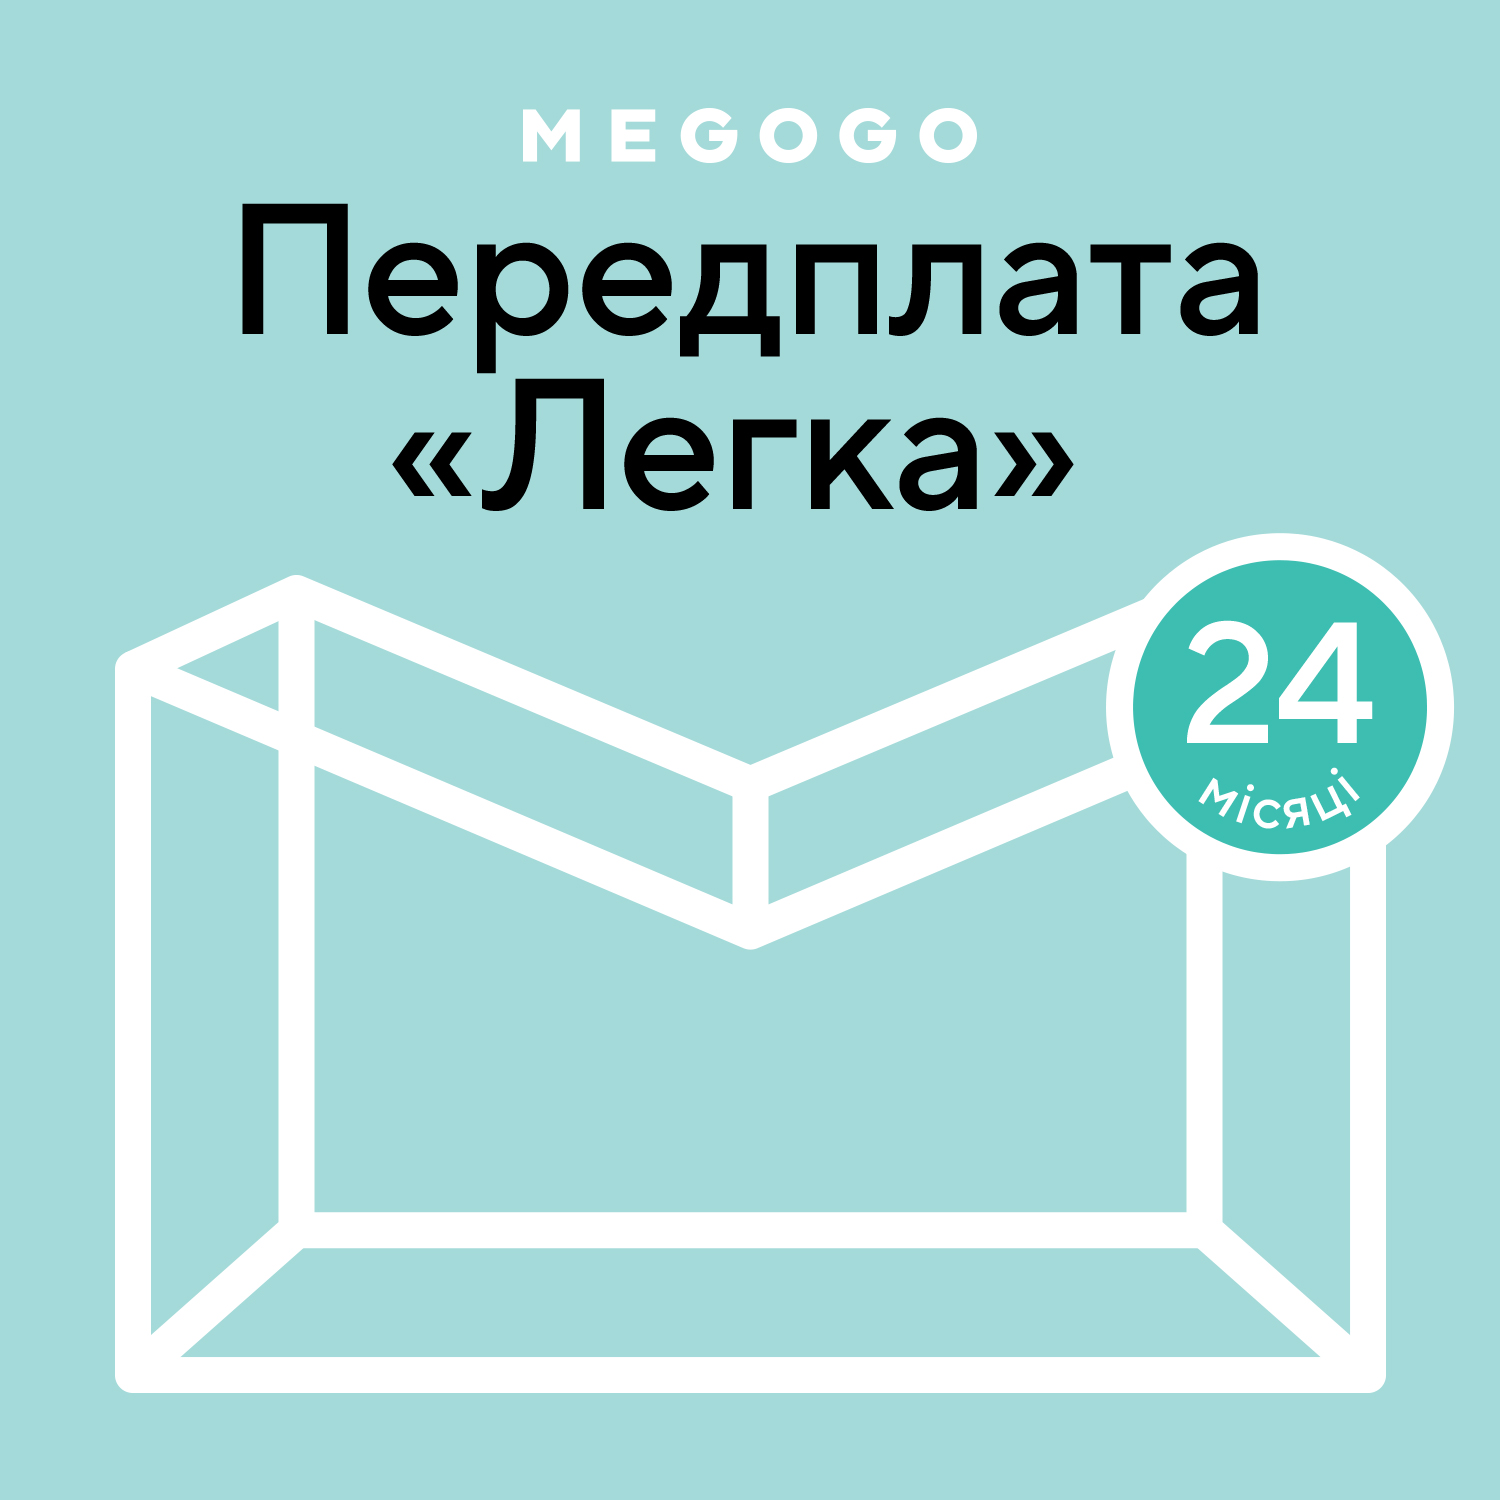 MEGOGO «Кино и ТВ: Легкая» 24 мес в Киеве